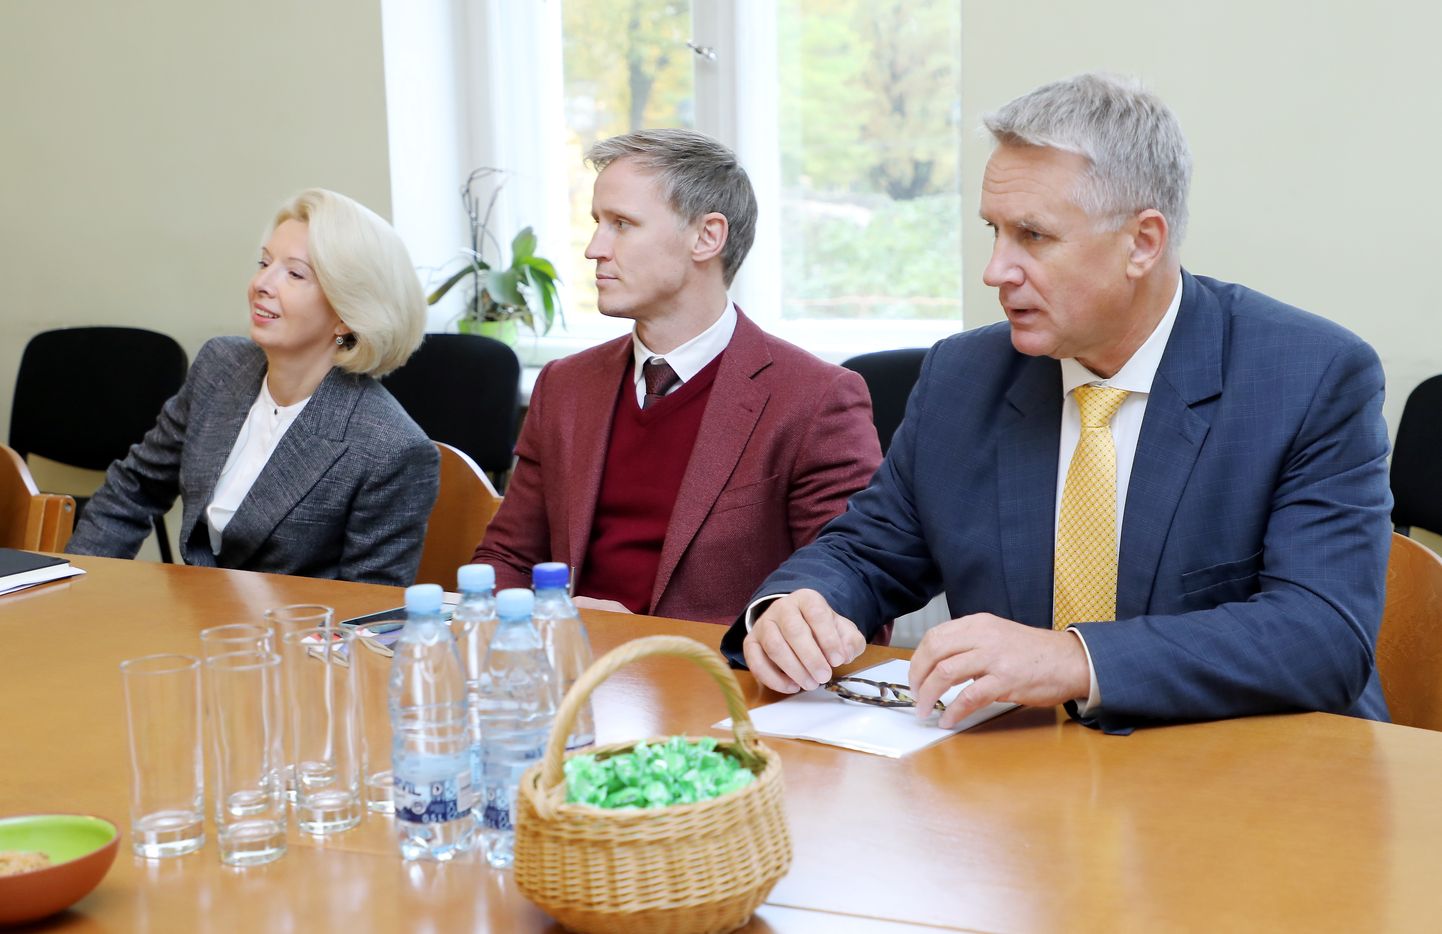 "Nacionālās apvienības "Visu Latvijai!" - "Tēvzemei un Brīvībai/LNNK" pārstāvji - Saeimas priekšsēdētāja Ināra Mūrniece, Saeimas Ārlietu komisijas priekšsēdētājs Rihards Kols un kultūras ministrs Nauris Puntulis tikšanās laikā ar "Jaunā vienotība" pārstāvjiem, kurā pārrunās valdības prioritātes un darāmos darbus 14. Saeimā.